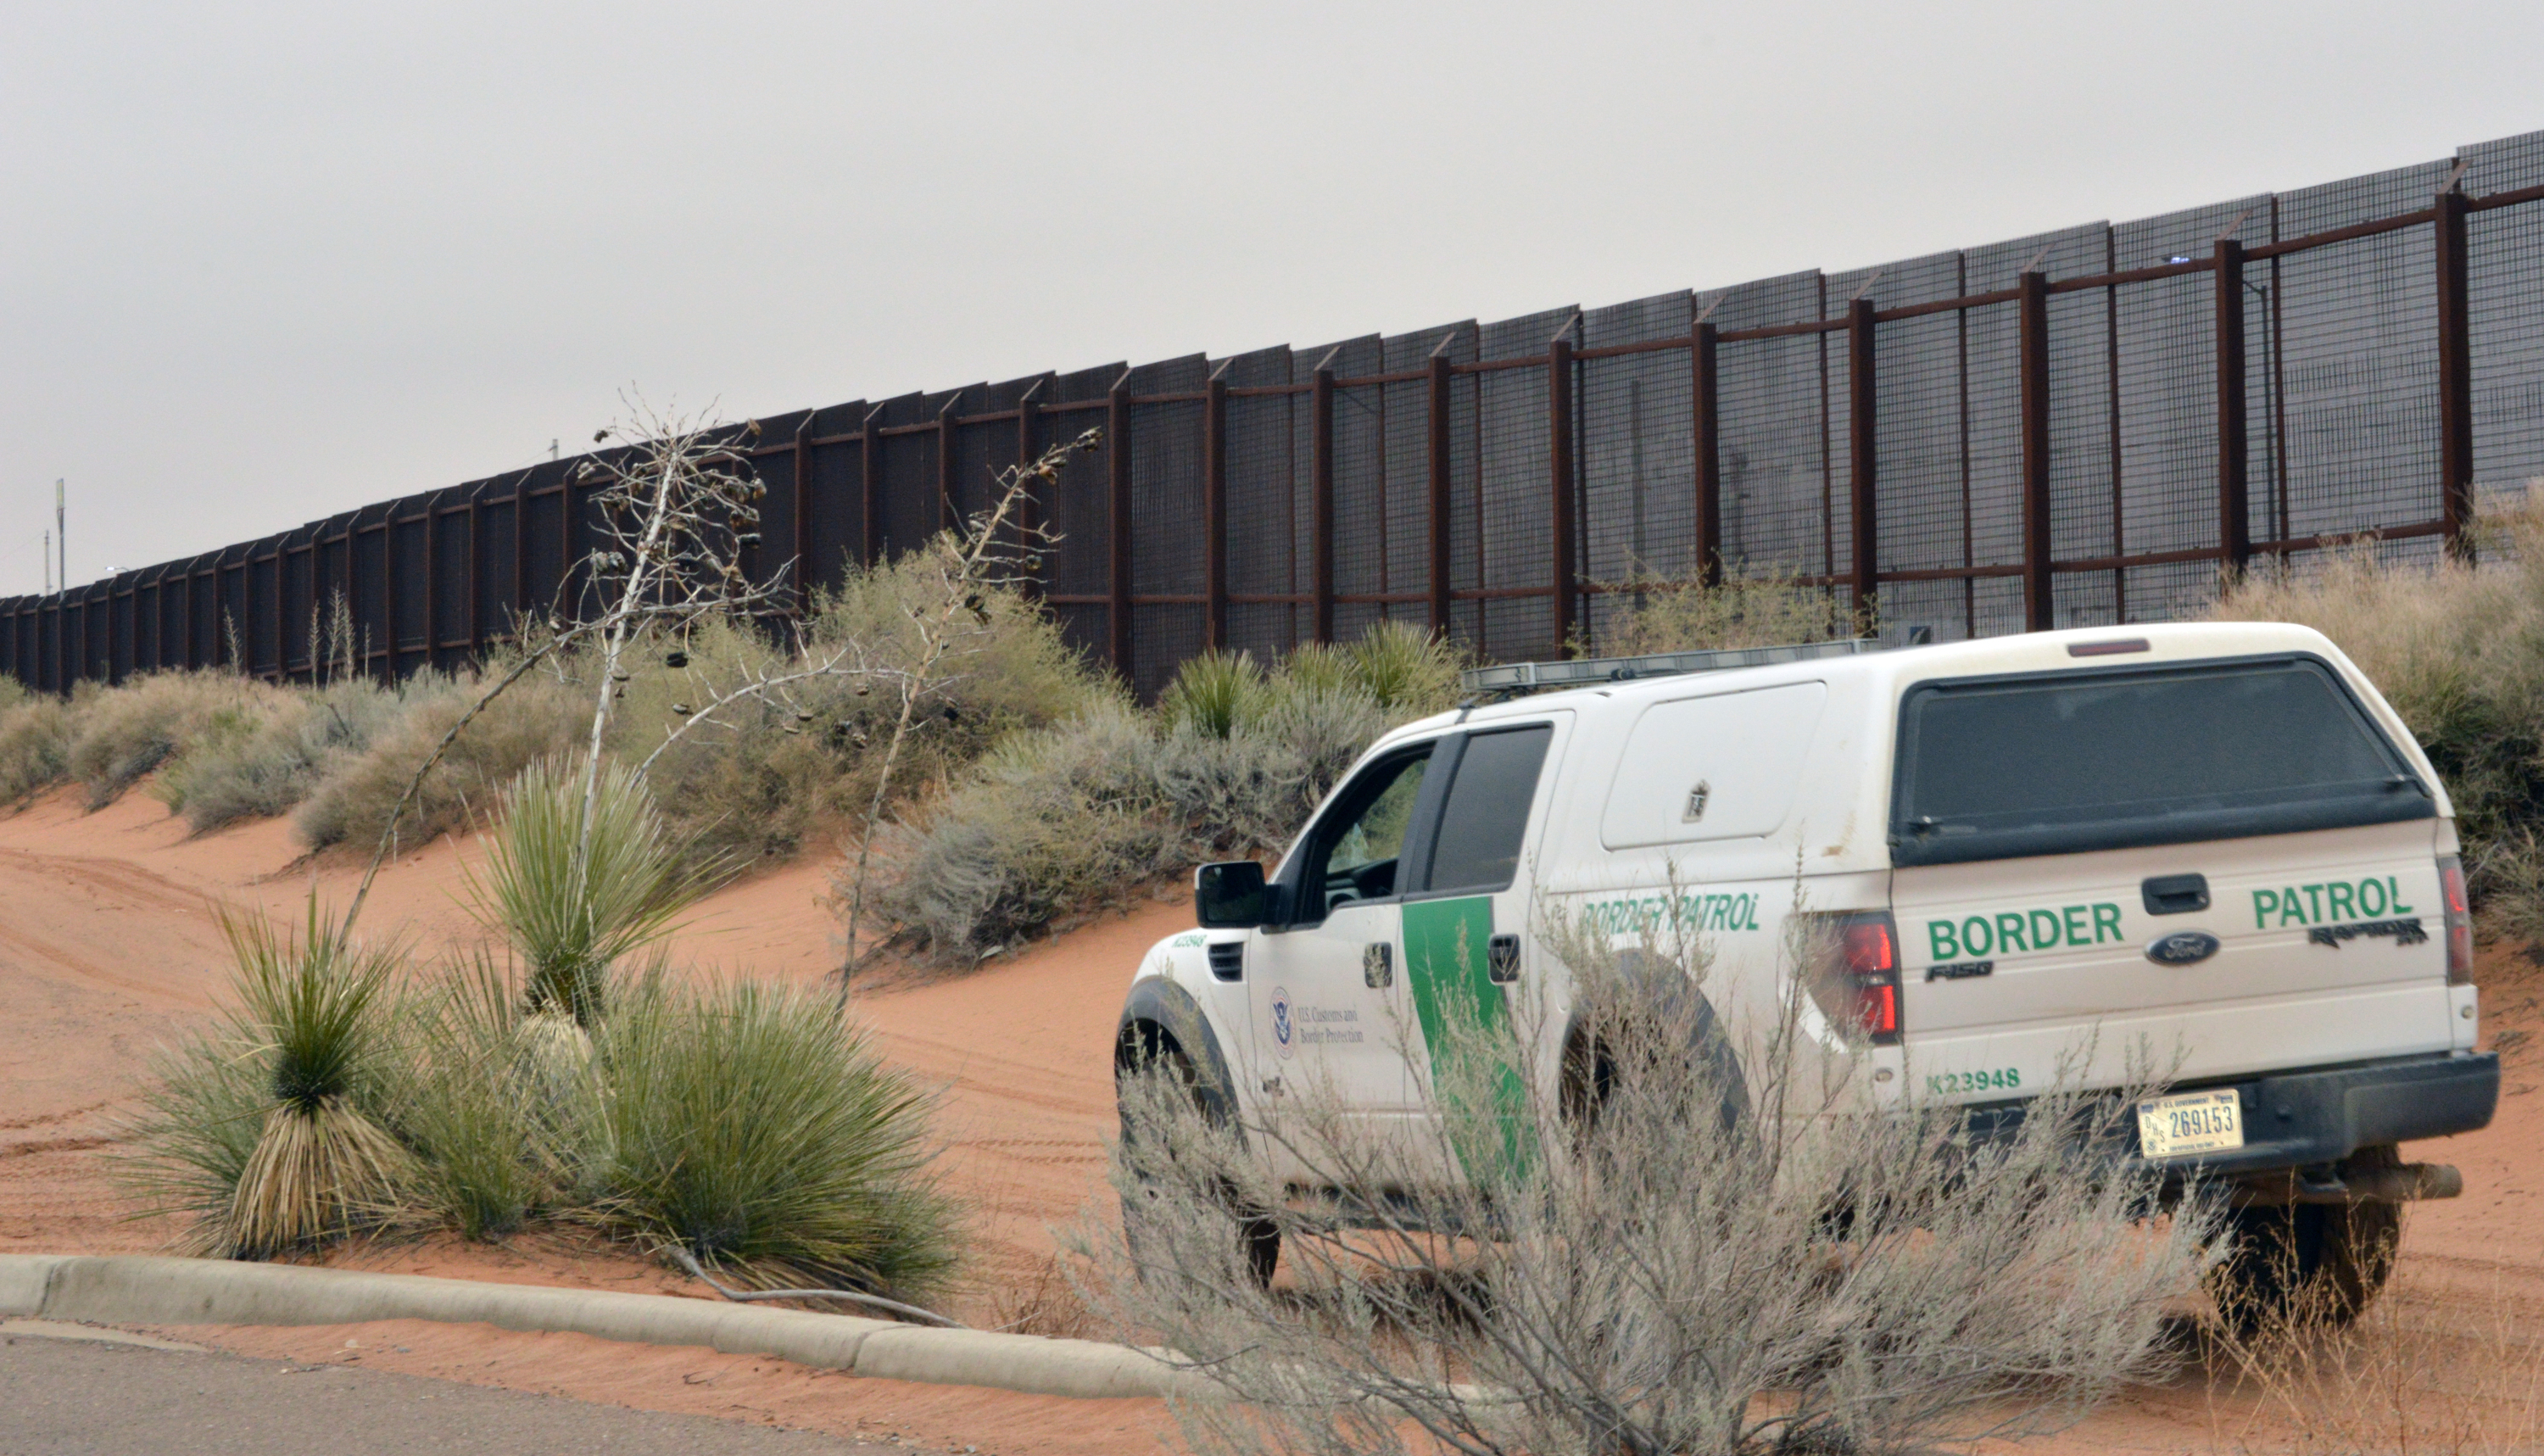 Въпросът за охраната на границата между САЩ и Мексико и оградата там остава нерешен